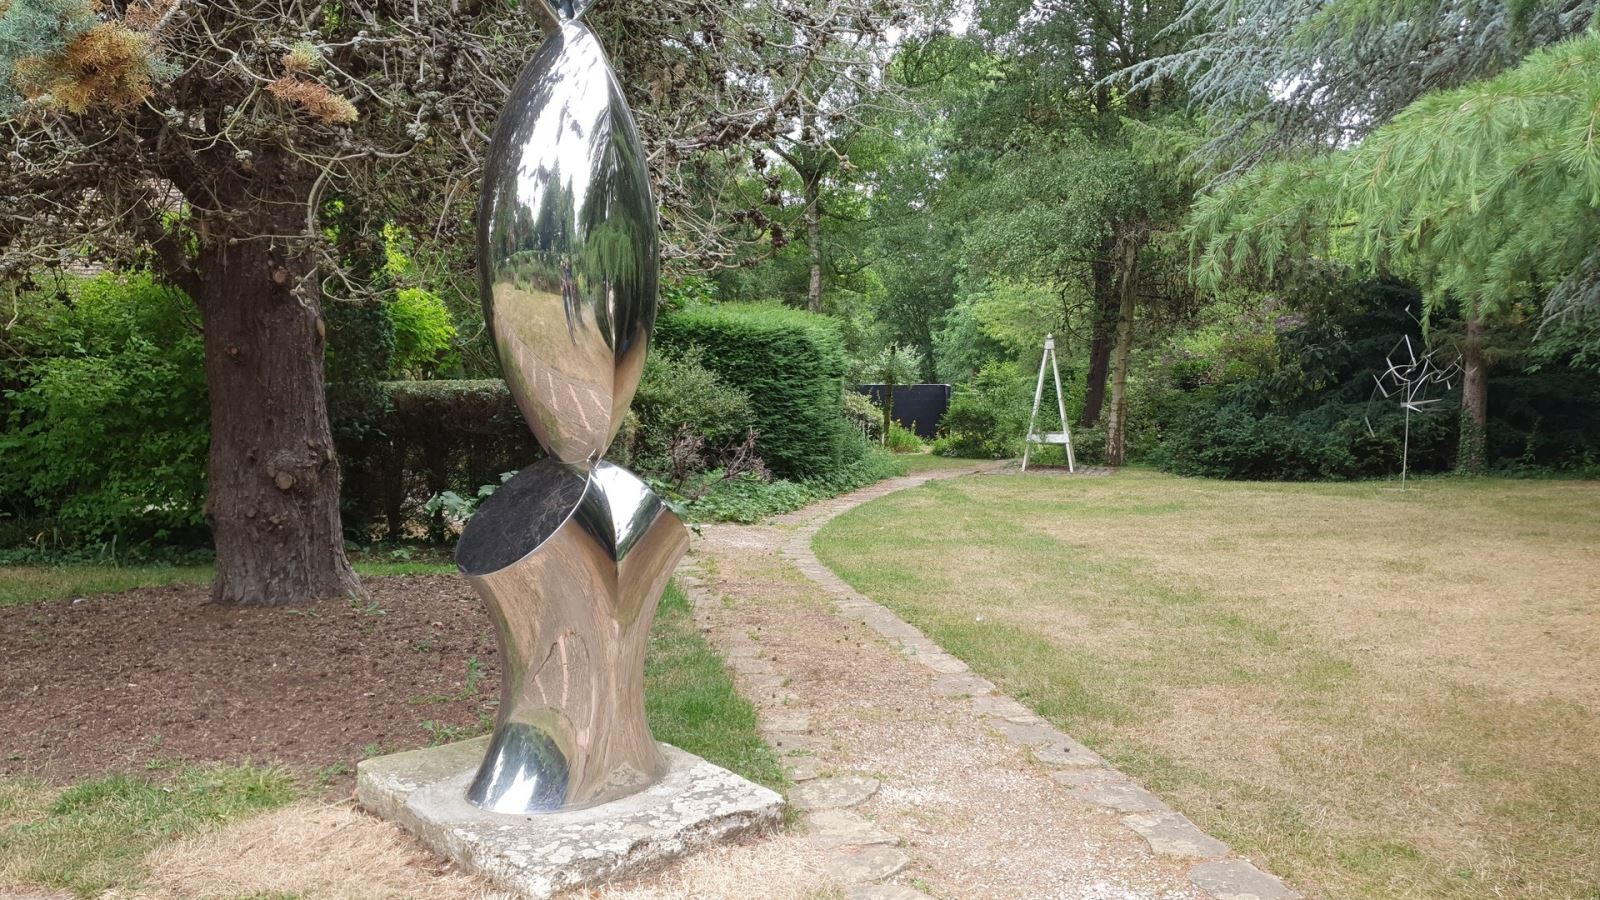 Sculpture in the Gibberd Garden, Harlow, Essex